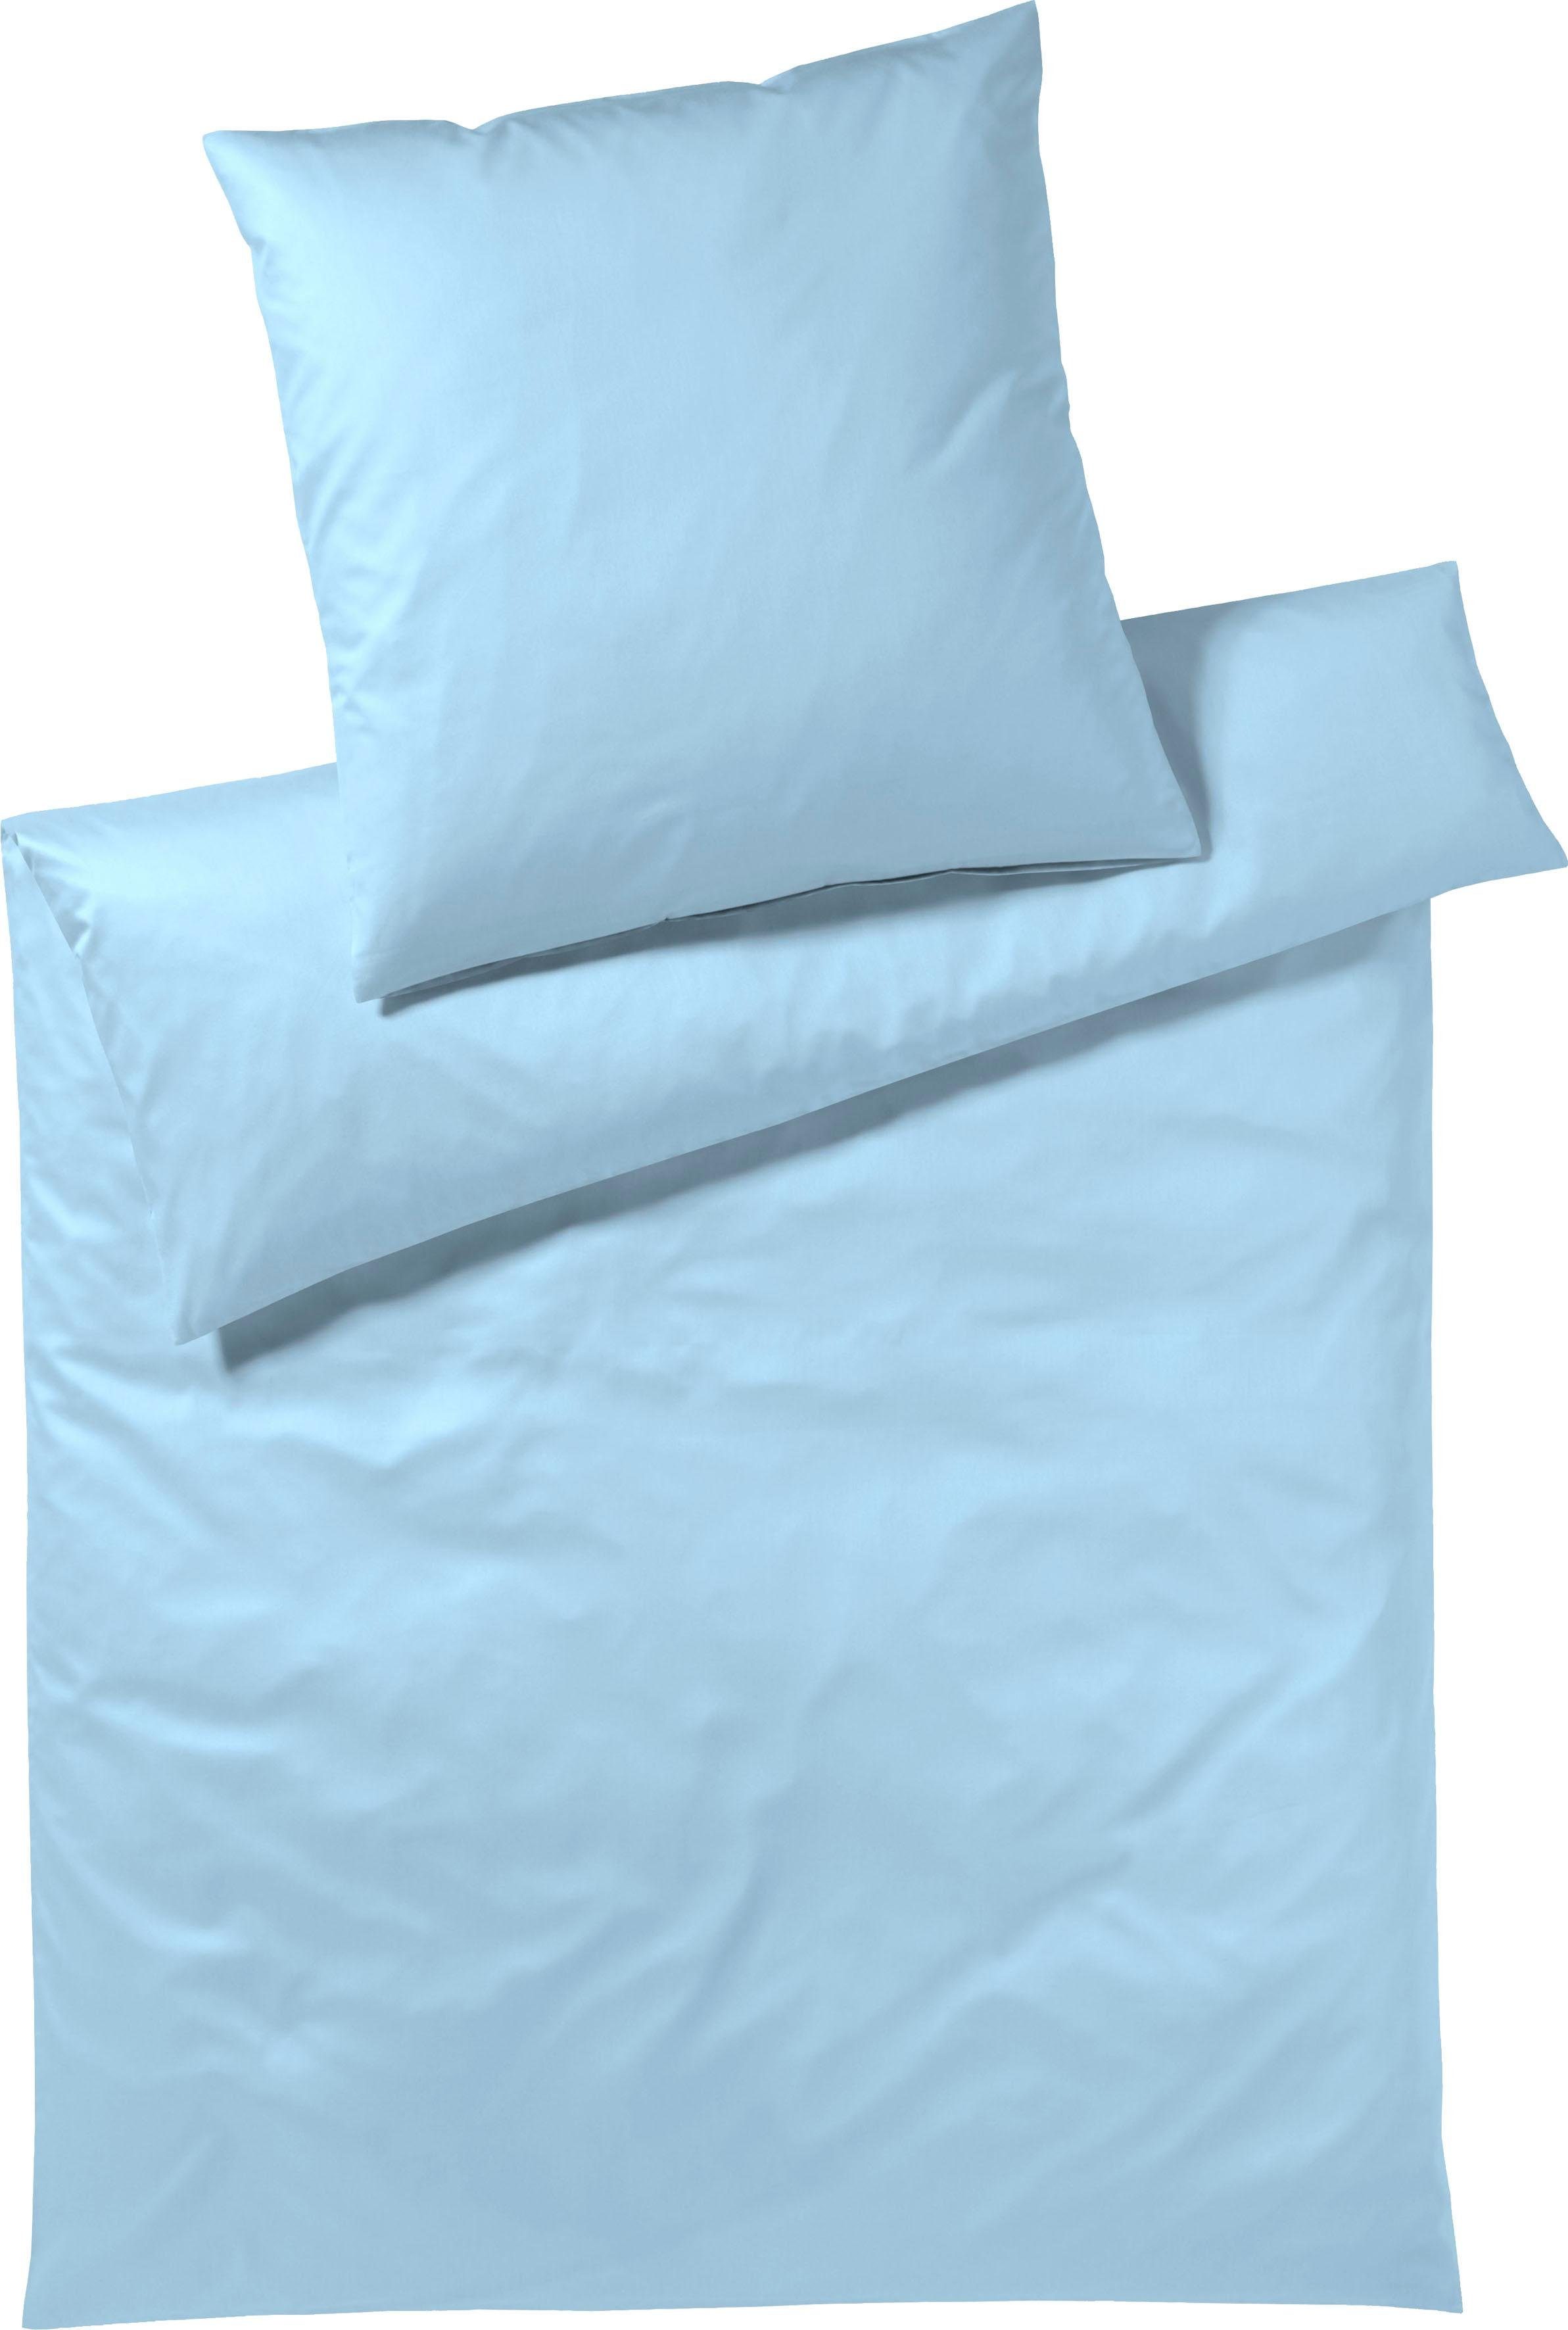 Bettwäsche Solid in Gr. 135x200 oder 155x220 cm, Elegante, Mako-Satin, 2  teilig, Bettwäsche aus Baumwolle, elegante Bettwäsche mit Reißverschluss,  Aus hautfreundlichem & luftdurchlässigem Material hergestellt